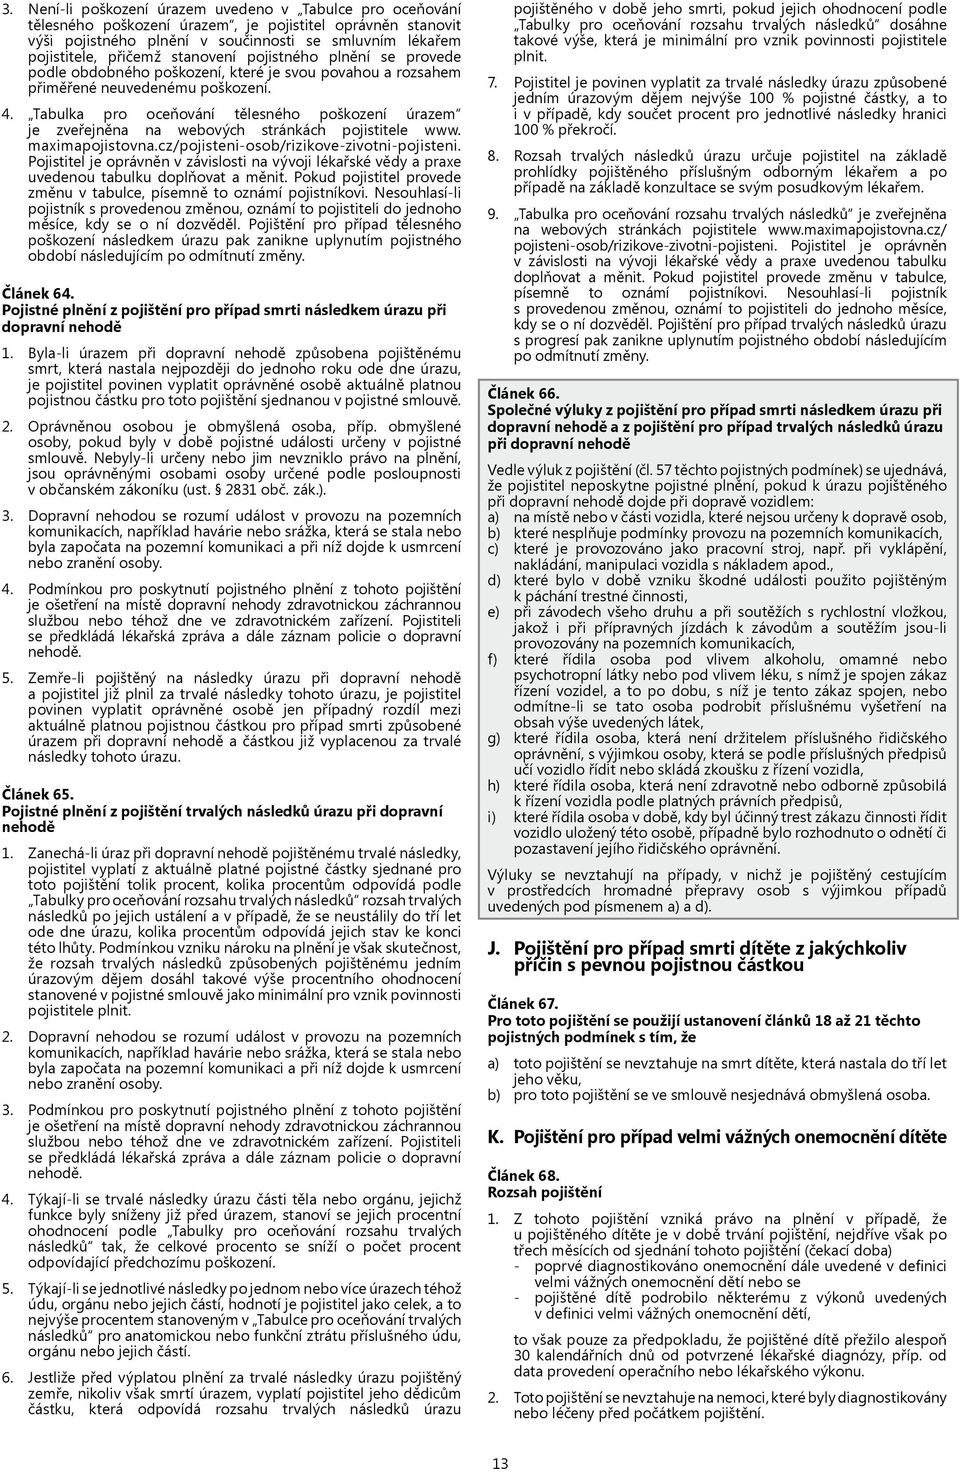 Tabulka pro oceňování tělesného poškození úrazem je zveřejněna na webových stránkách pojistitele www. maximapojistovna.cz/pojisteni-osob/rizikove-zivotni-pojisteni.